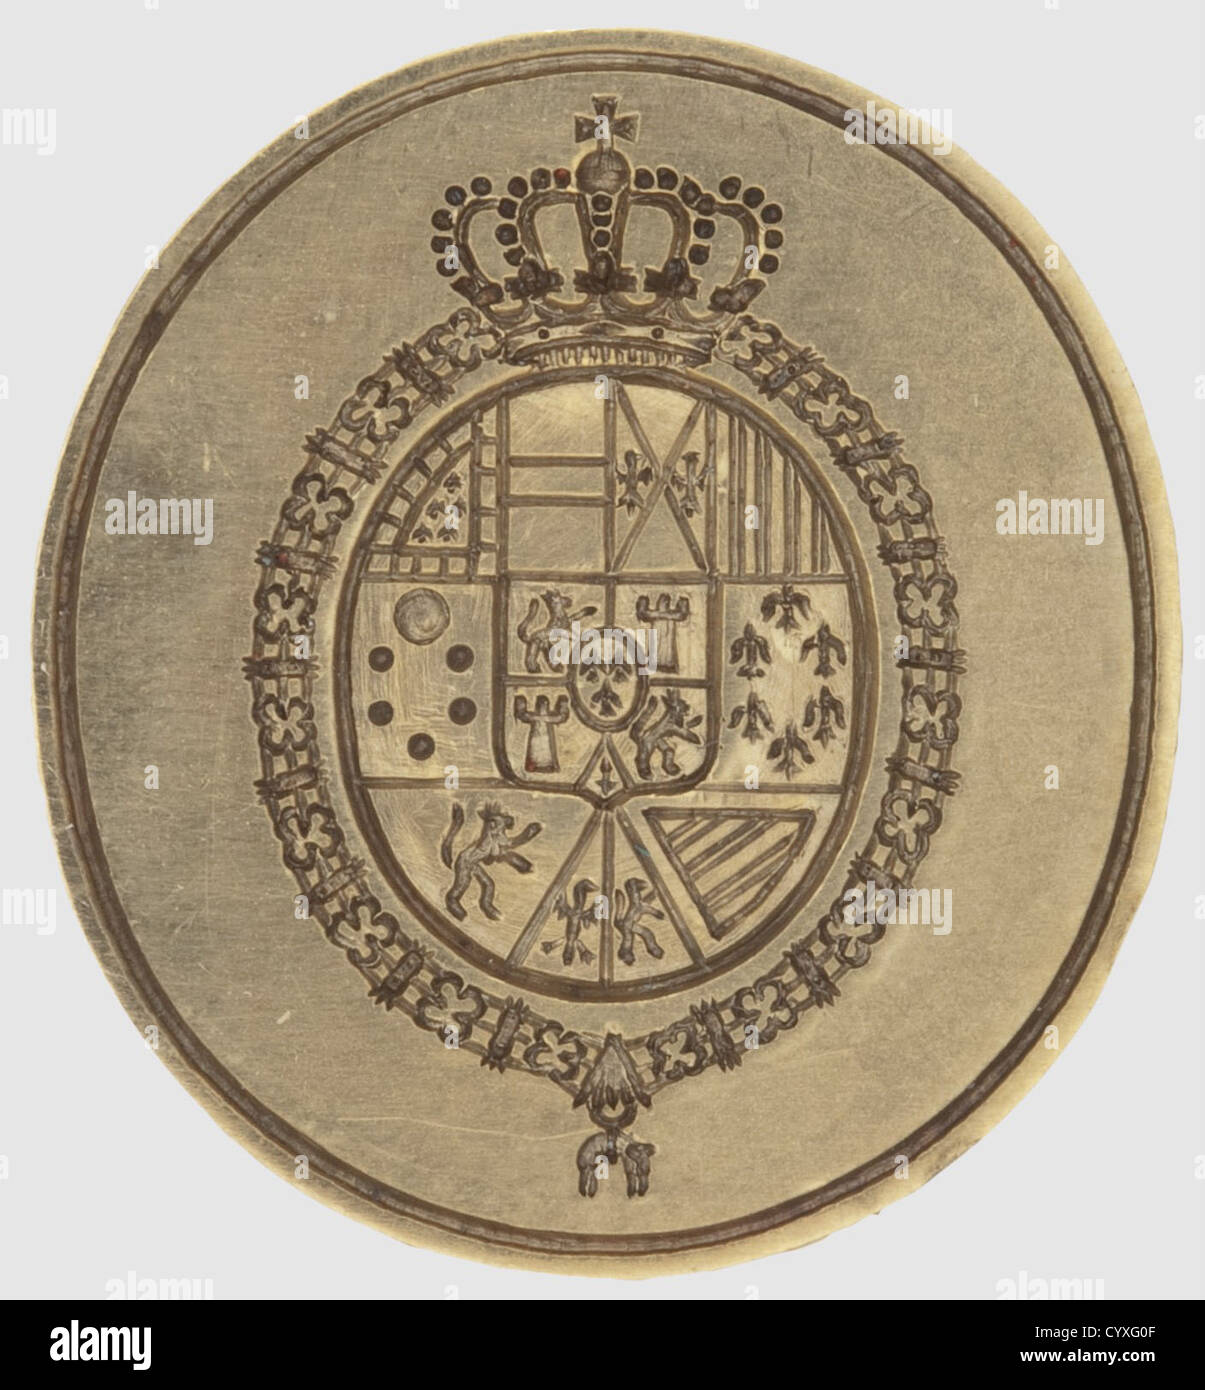 Le roi Alfons XIII(1886-1941),un sceau personnel mère-de-perle, or et laiton.la surface du sceau gravée avec la couche royale des bras mis dans la chaîne de l'ordre du molleton d'or.épaule d'or décorée floralement.mère sculptée de poignée de perle sous forme de mains entrelacées.hauteur 9.9 cm.avec deux lettres signées à la main par le roi et Adressée au Prince Alfons de Bavière datant de 1929 et 1931 resp.(un mois après qu'il est allé en exil), une enveloppe portant une impression du présent sceau.aussi un certain nombre de lettres, cartes de voeux et photos de la ,droits additionnels-Clearences-non disponible Banque D'Images